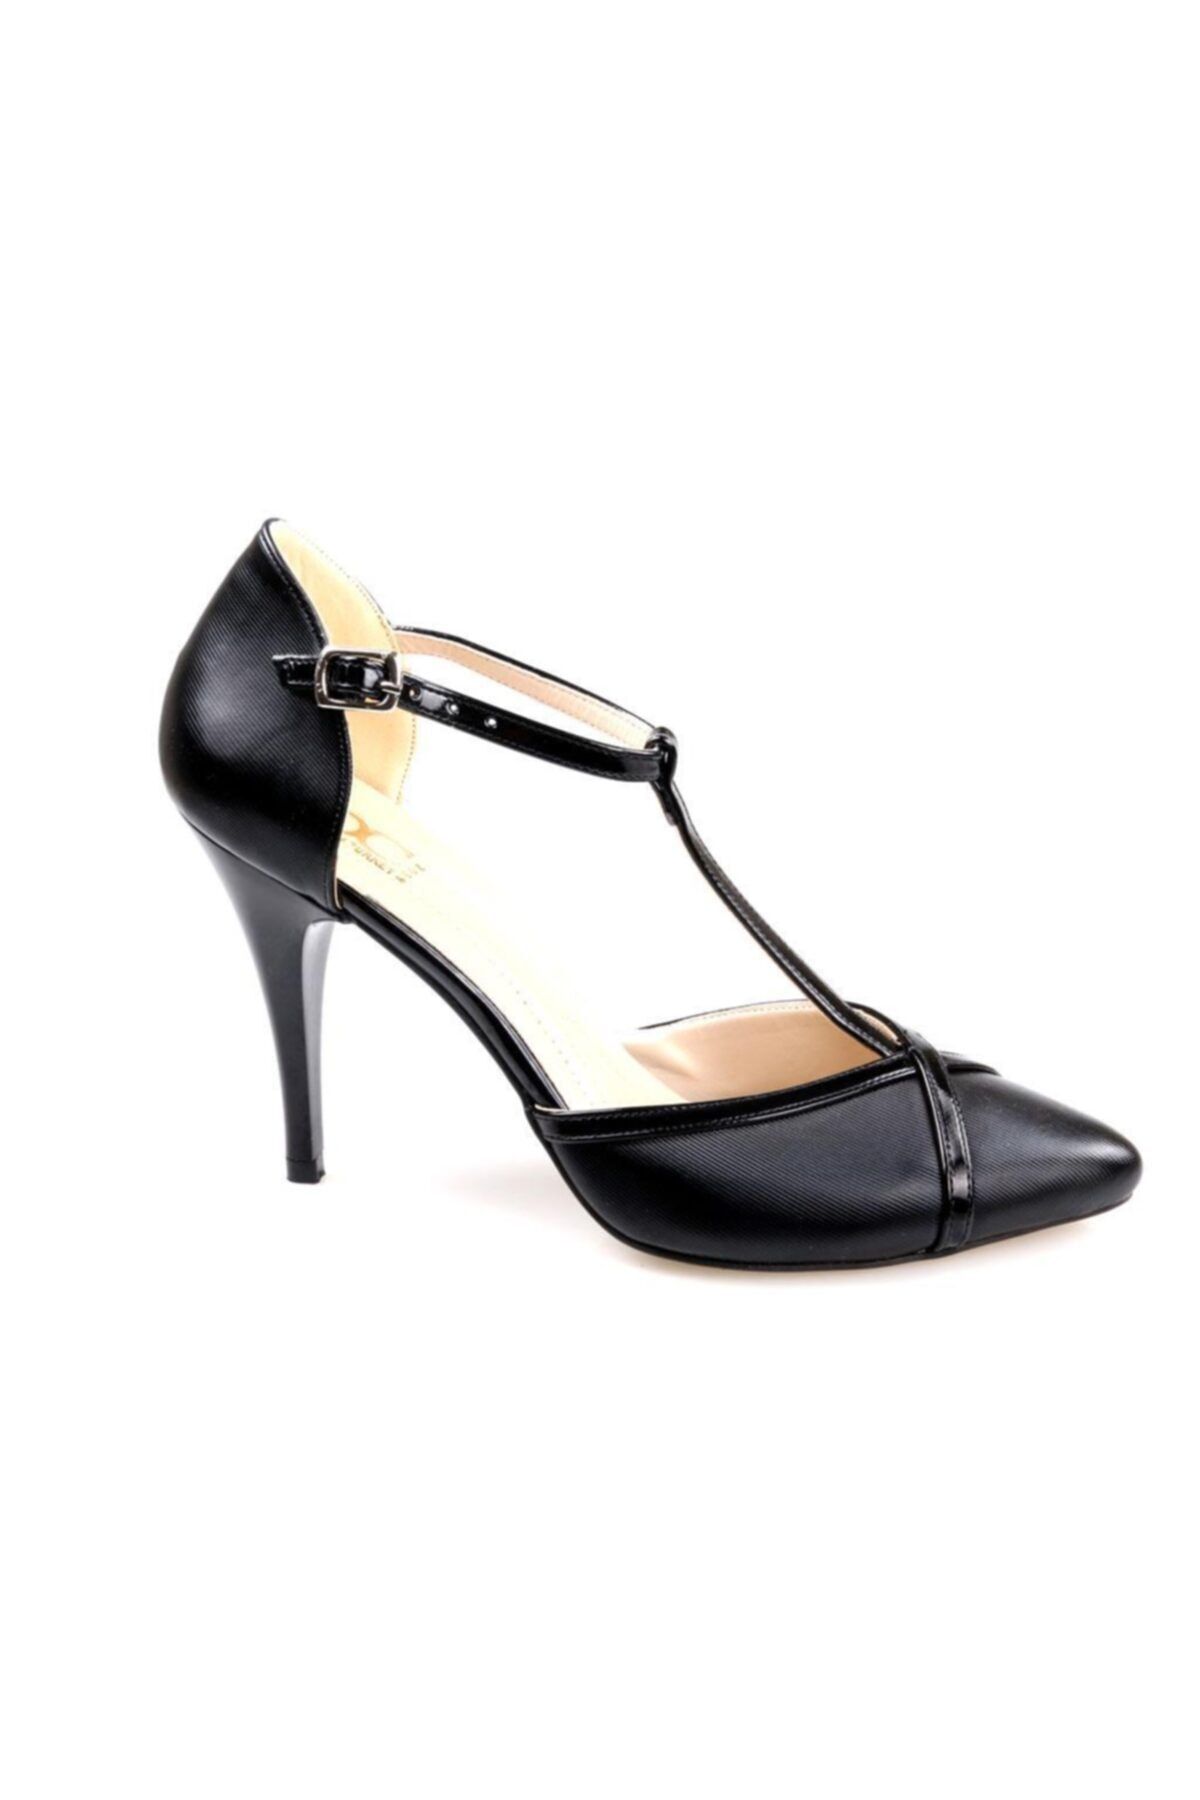 OC Bayan (35-39) Siyah Abiye Stiletto Ayakkabı